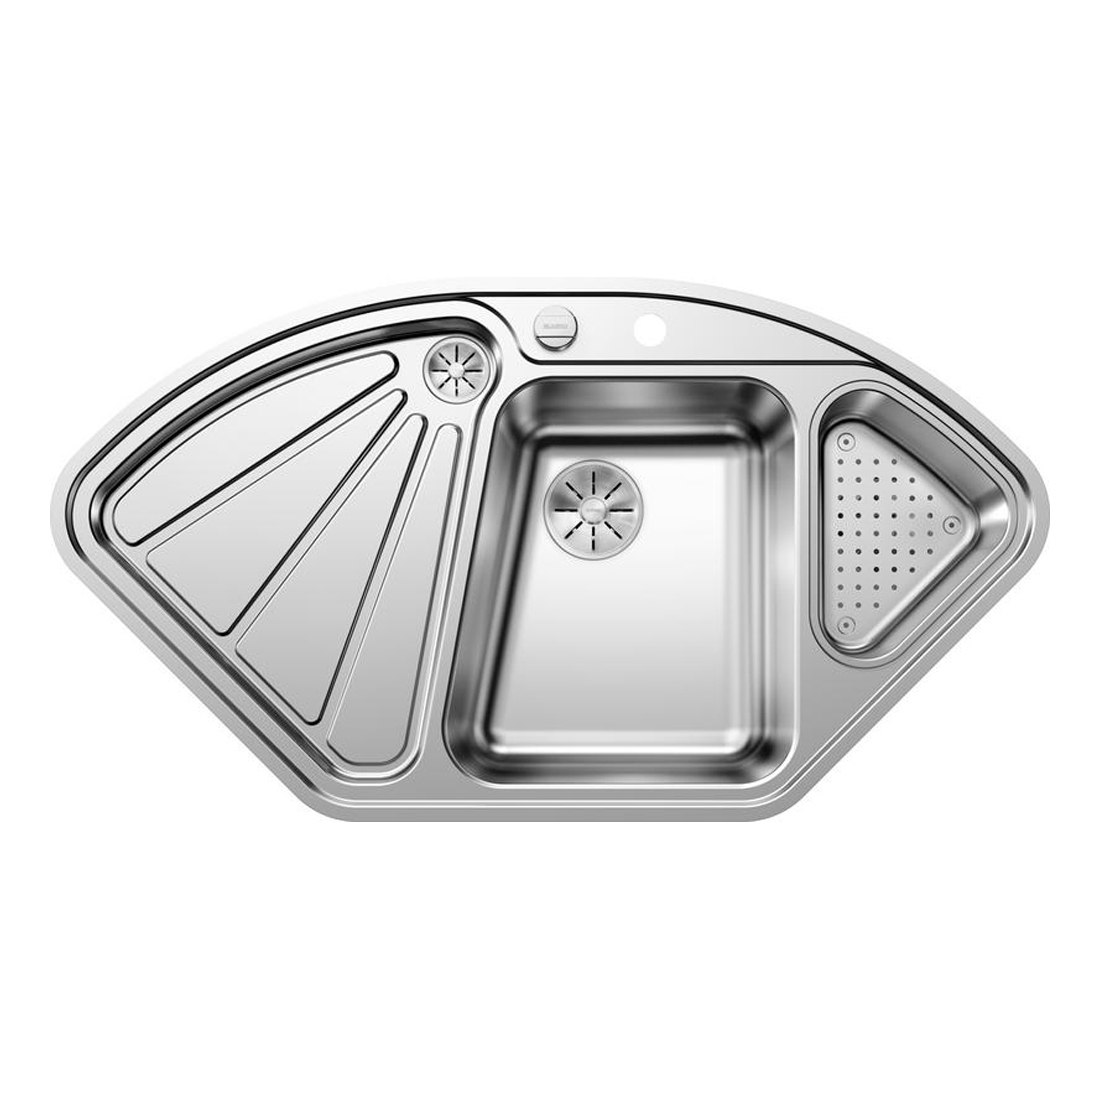 Кухонная мойка Blanco Delta-IF полированная сталь кухонная мойка franke 127 0688 779 нержавеющая сталь